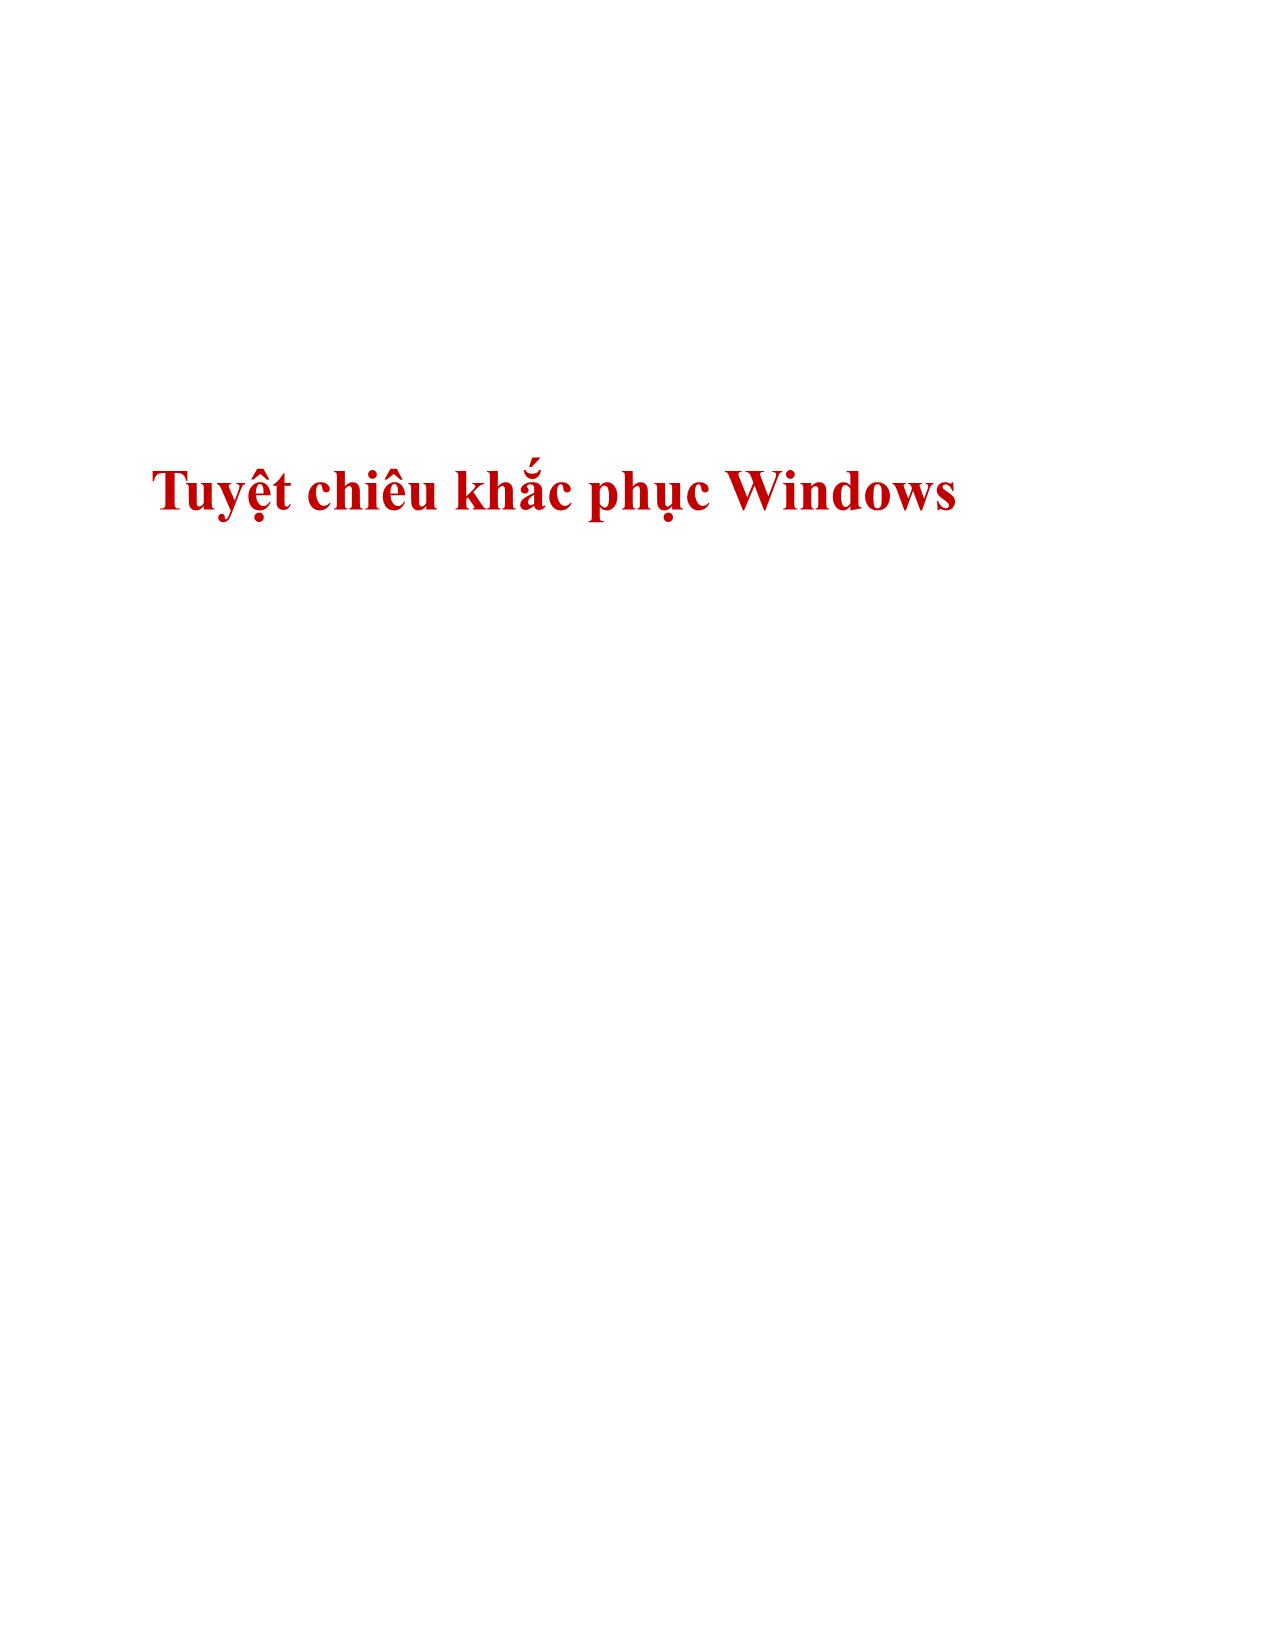 Tuyệt chiêu khắc phục Windows trang 1